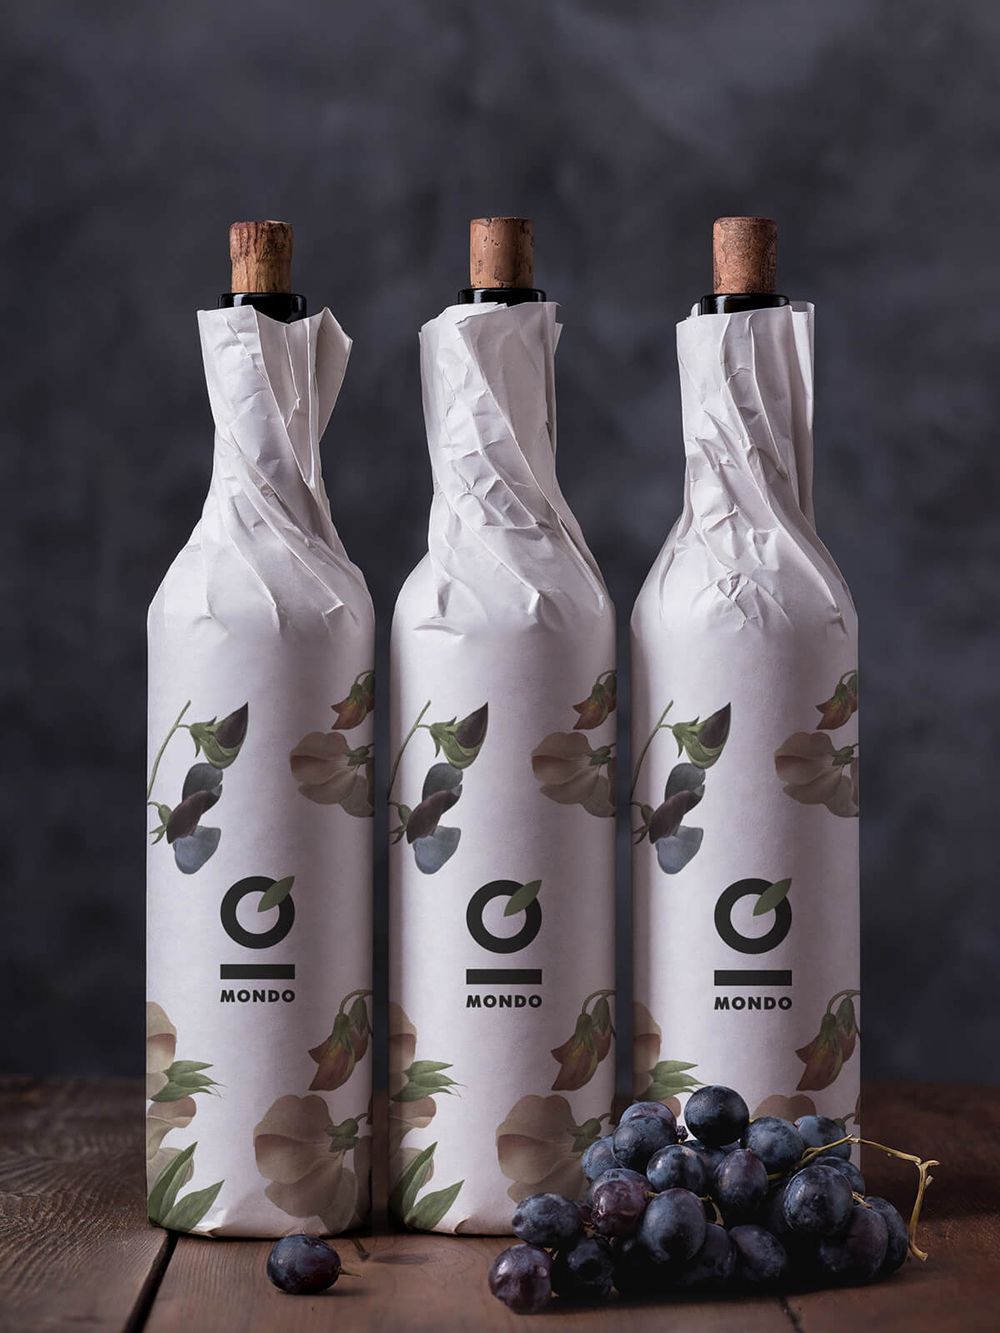 Diseño y desarrollo de identidad visual corporativa para restaurante Mondo. Detalle packaging para vino.